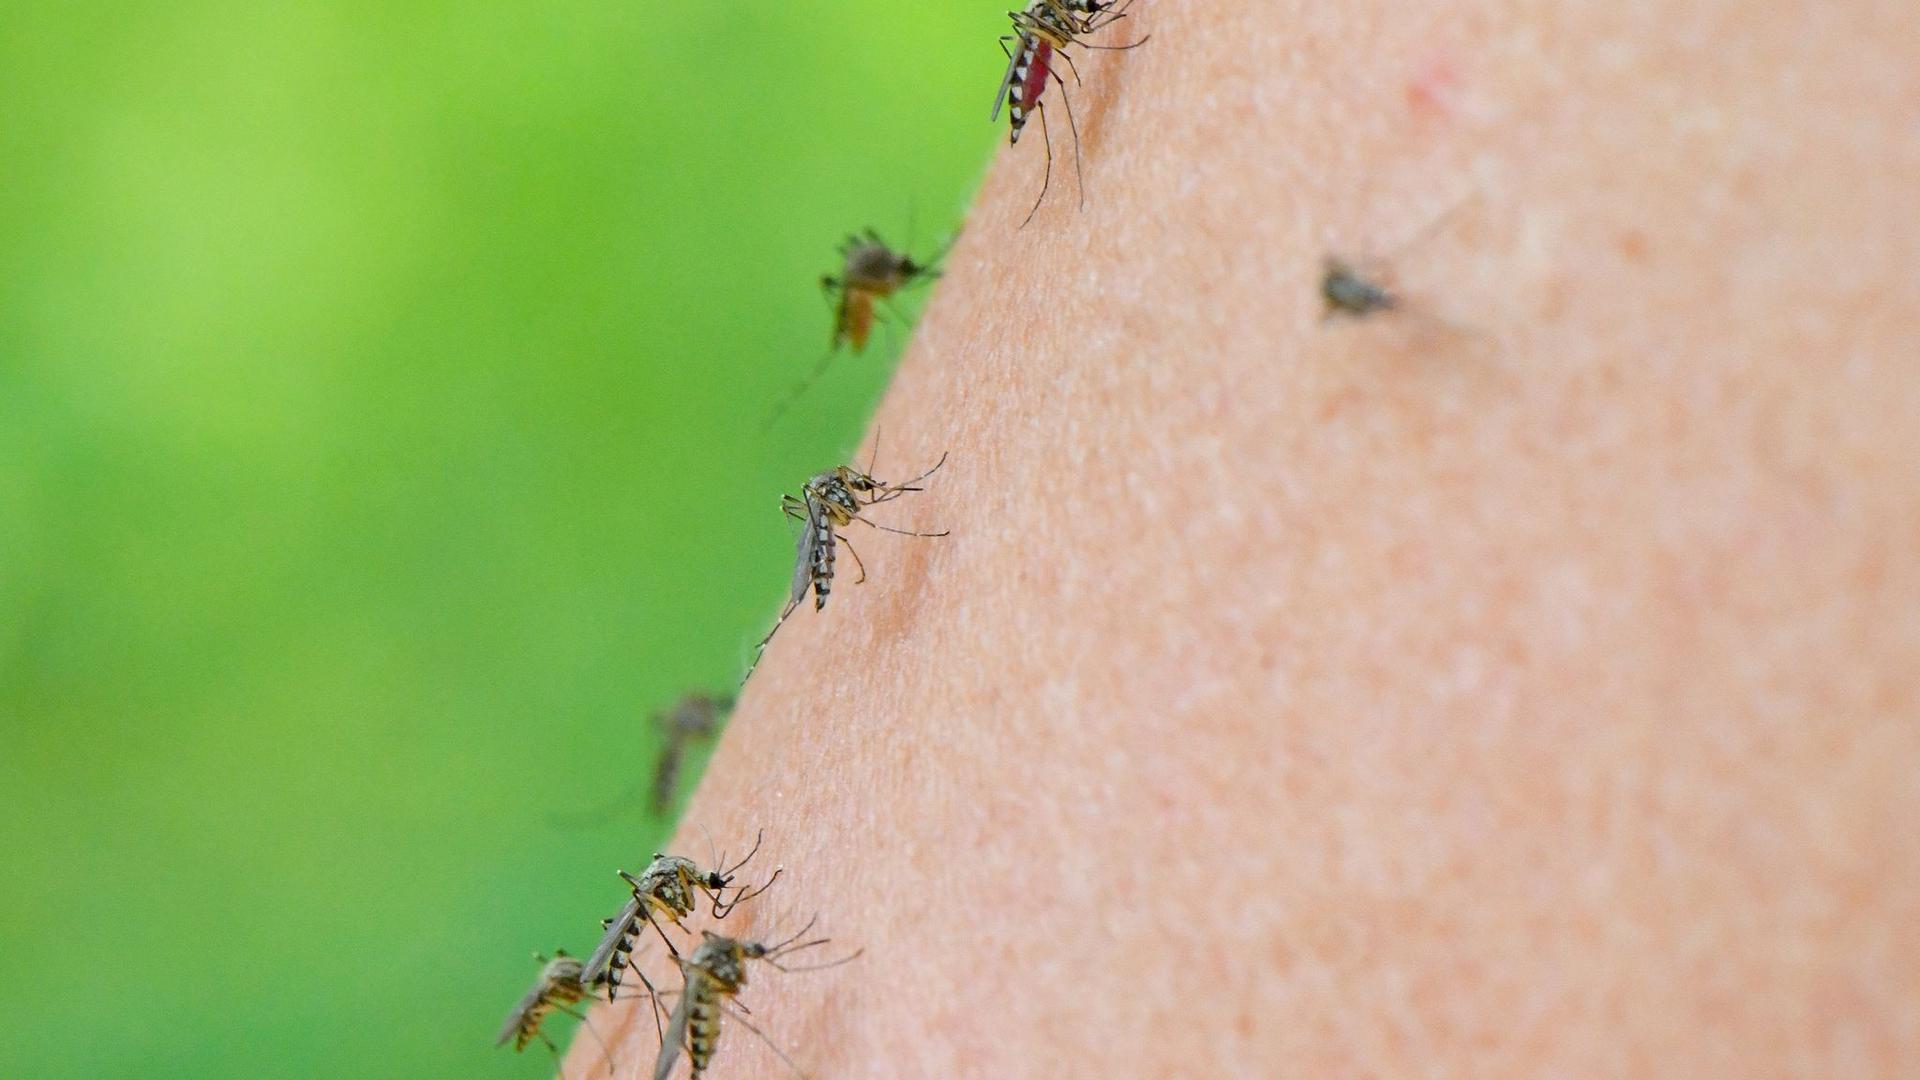 Auf dem Arm einer Frau haben sich gleich mehrere Mücken versammelt.